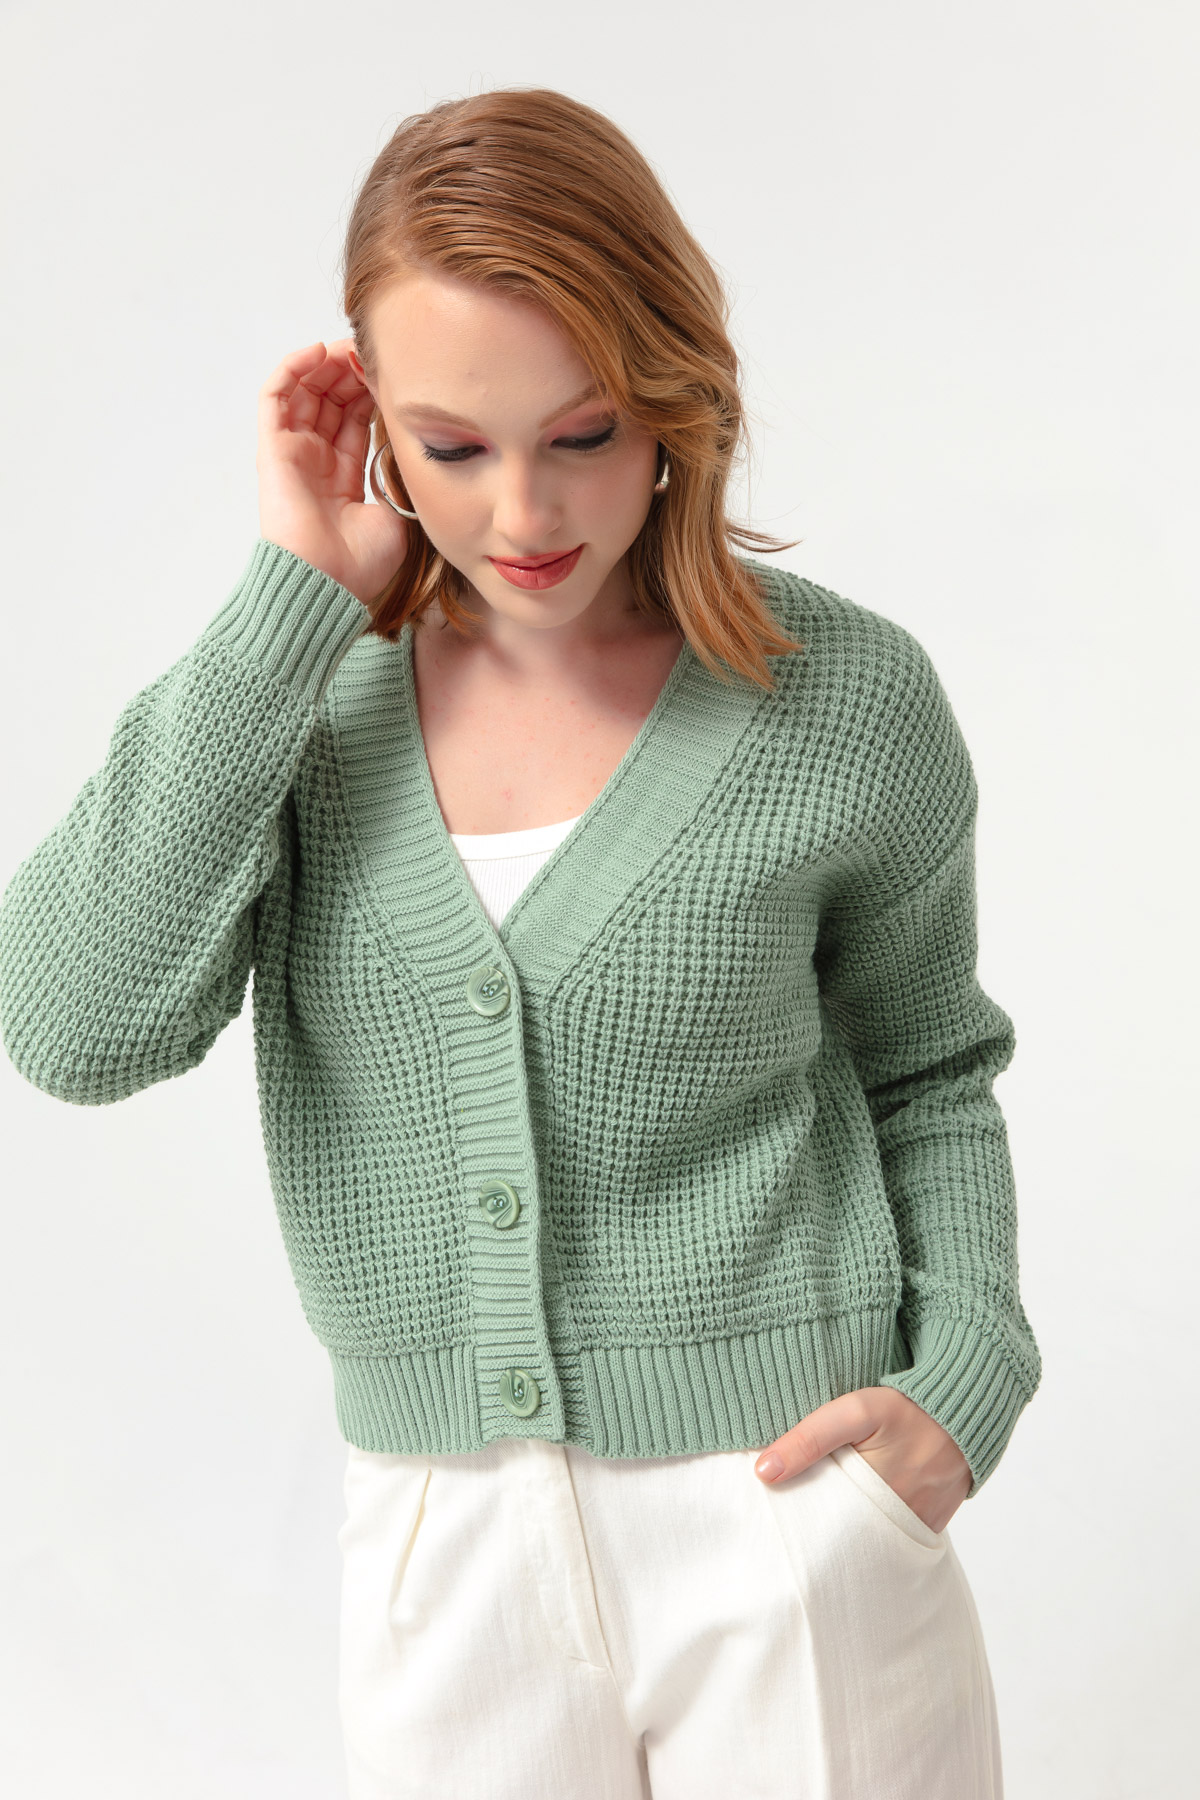 Women's Mint Green Knitwear Cardigan